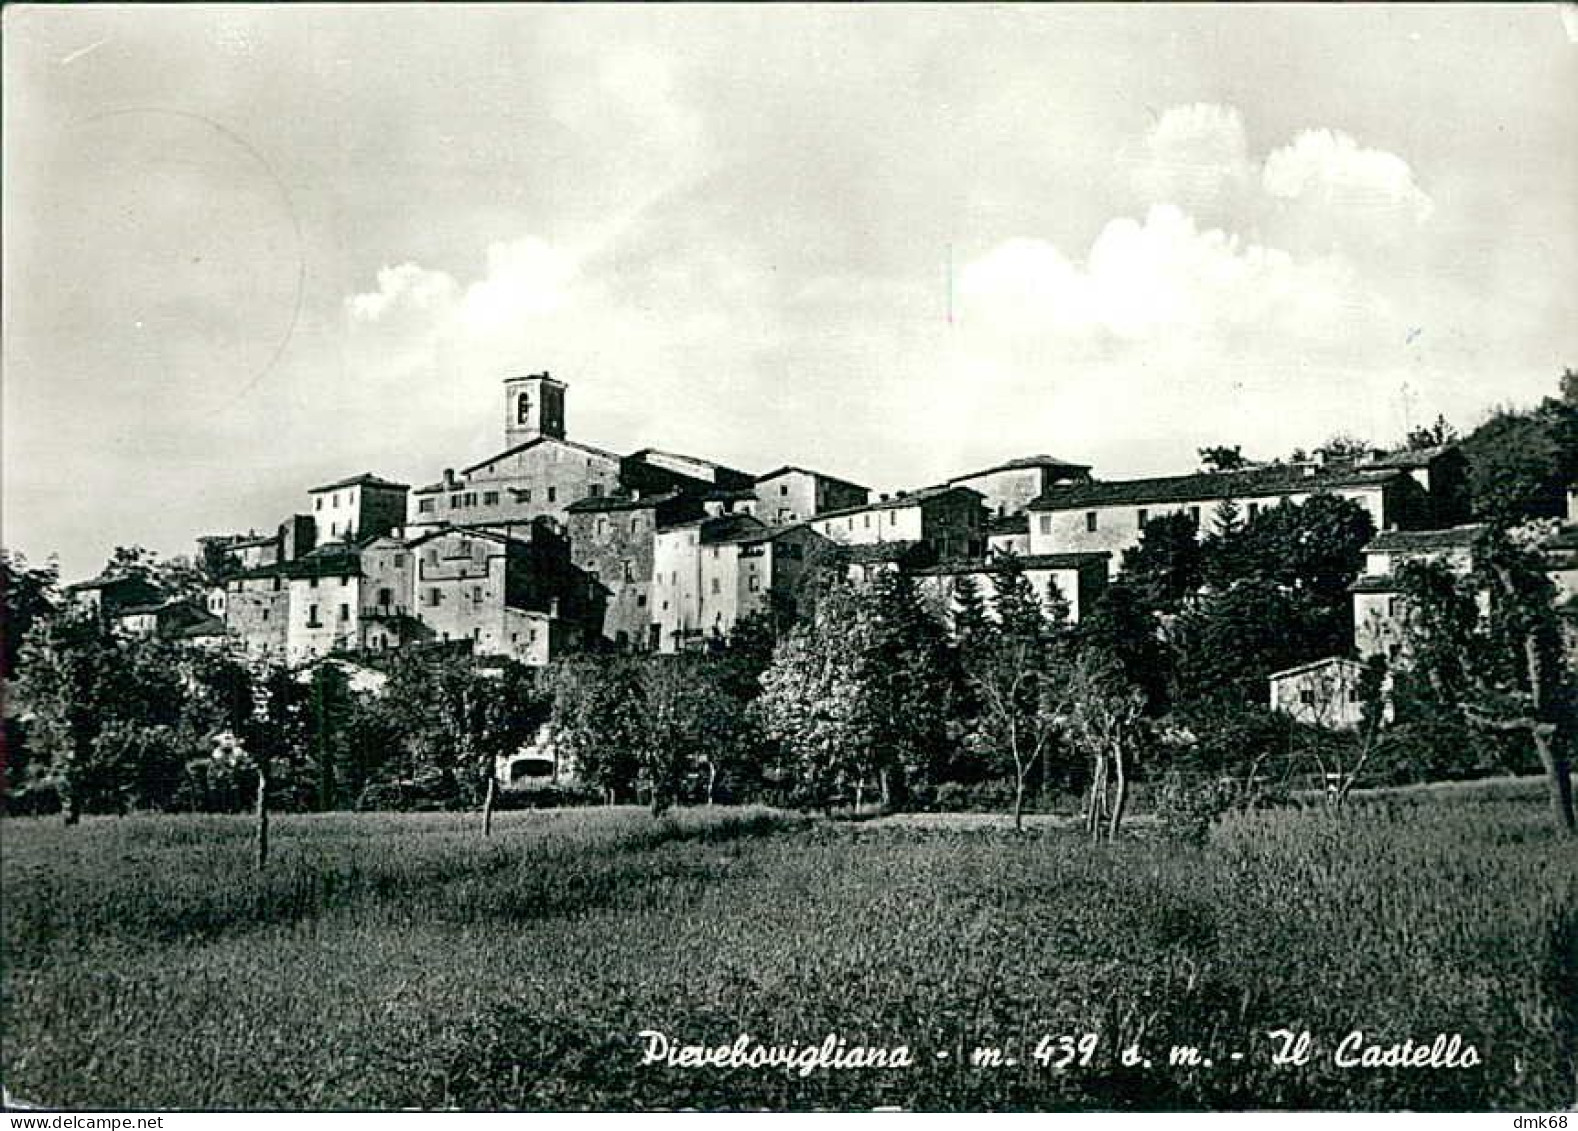 PIEVEBOVIGLIANA ( MACERATA ) IL CASTELLO - EDIZIONE VENANZONI - SPEDITA 1963 (20612) - Macerata